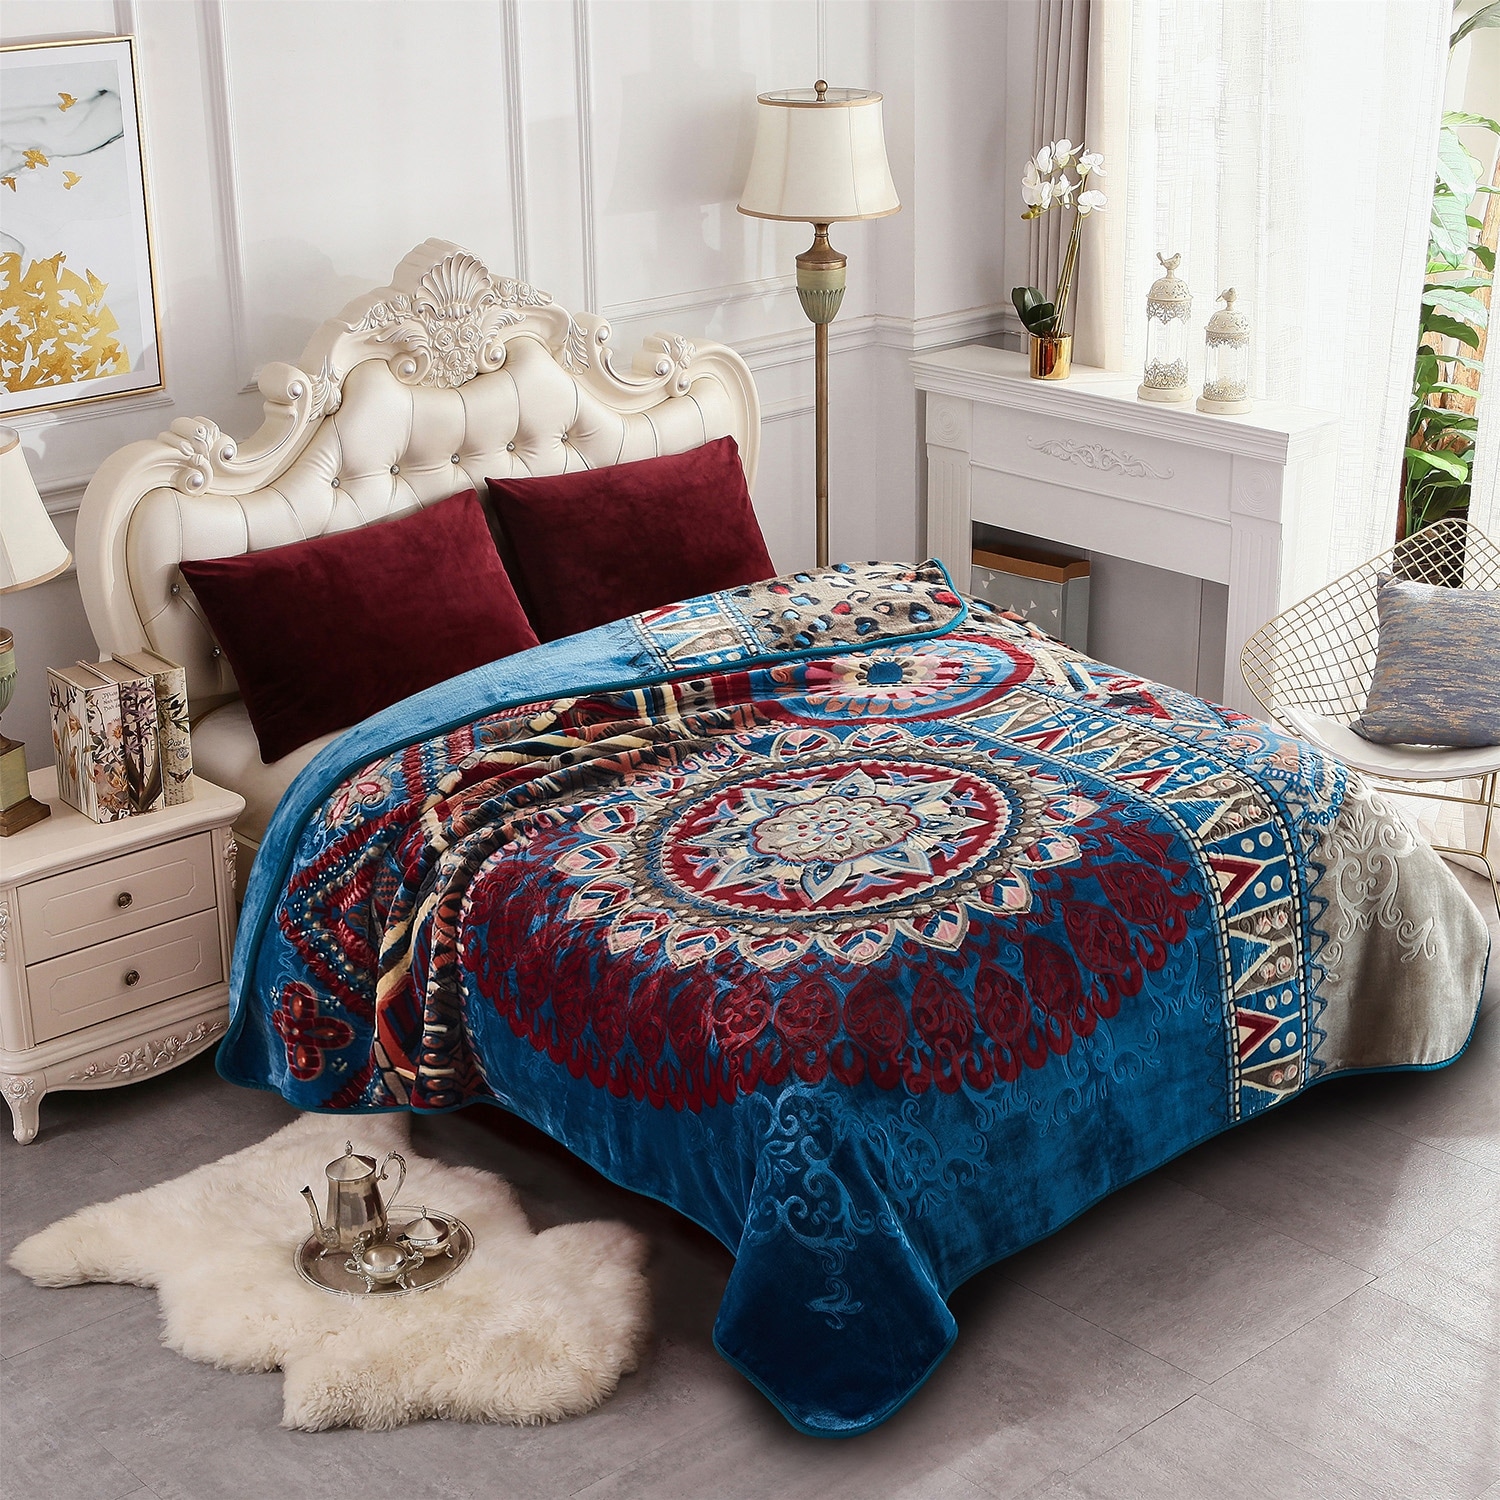 Heavy Korean Mink Fleece King Size Blanket - On Sale - Bed Bath & Beyond -  30899050